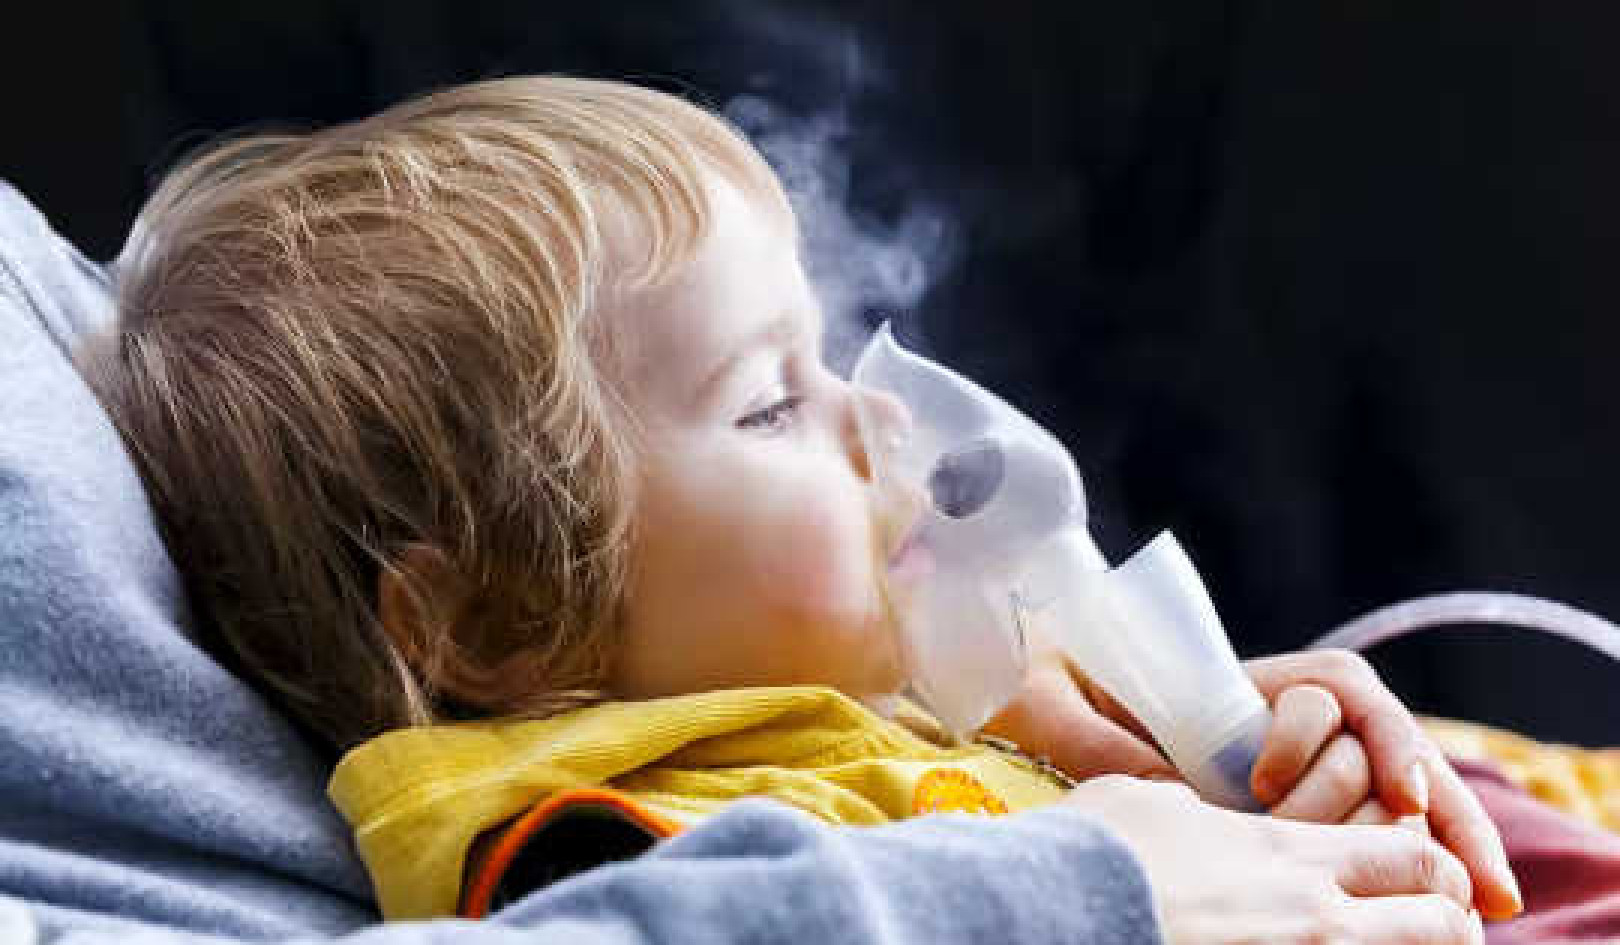 Te 3 rzeczy w domach wykazują najsilniejsze powiązania z astmą